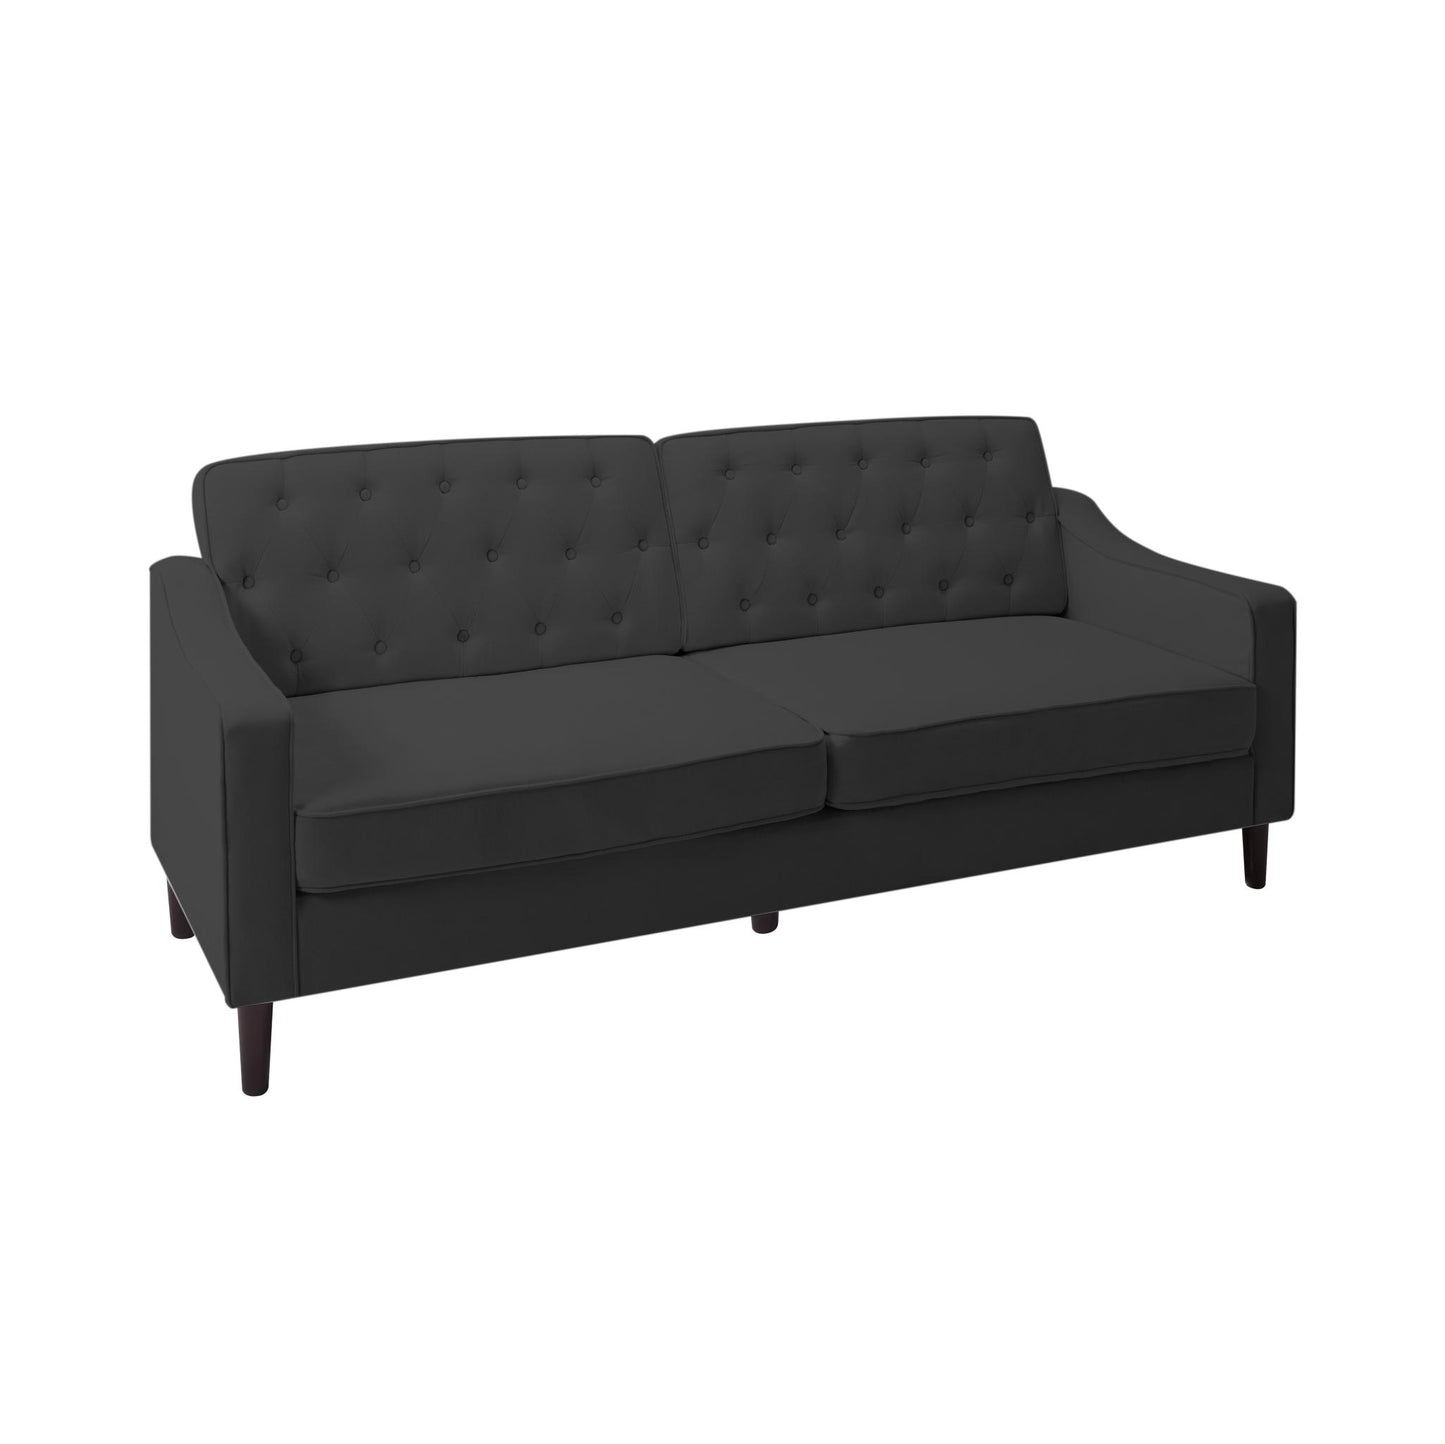 77.2” Square Arm Sofa